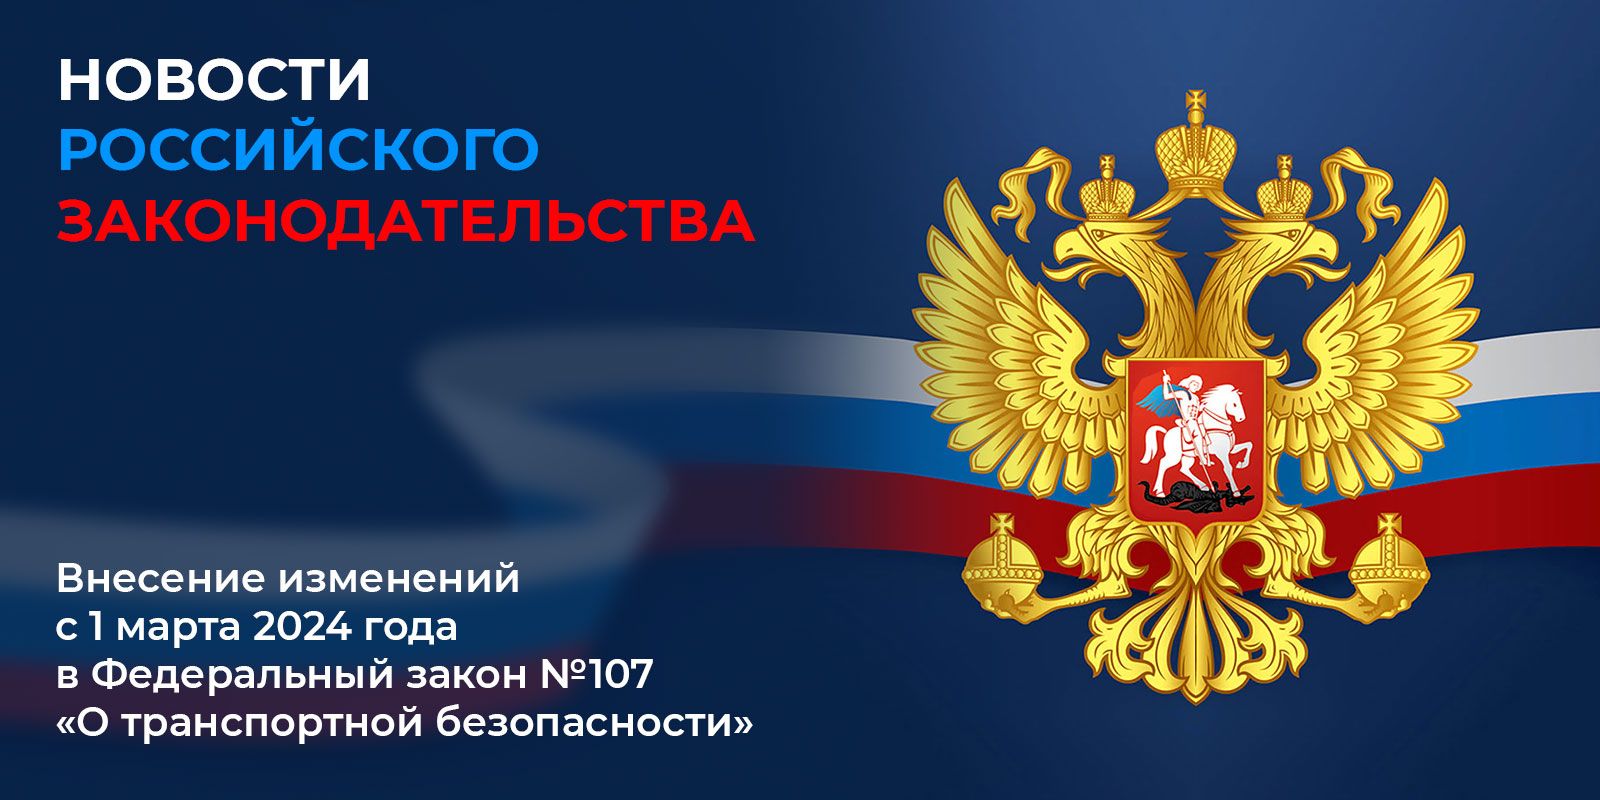 Новости Российского законодательства - Изменения в обеспечении транспортной безопасности ФЗ №107 для гражданской авиации после 1 марта 2024